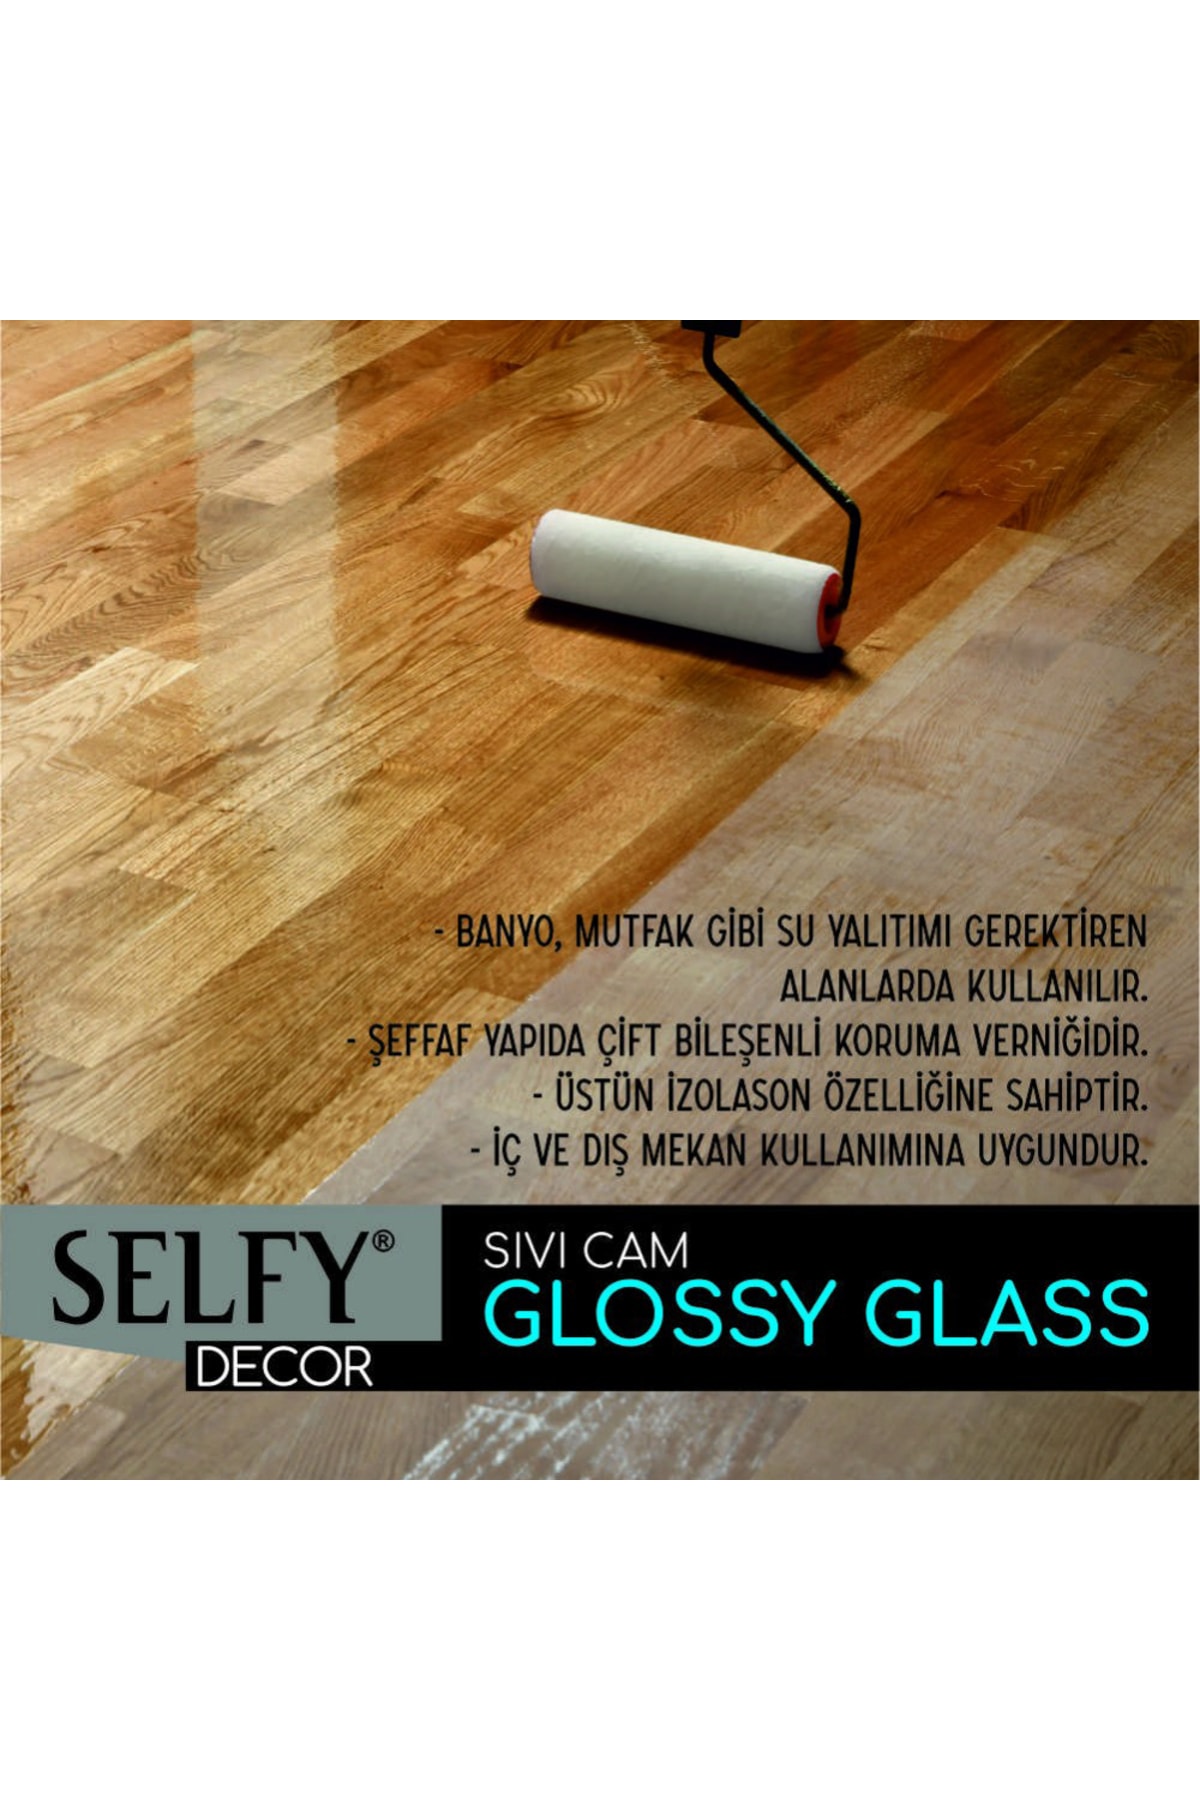 GLANCE Surface 3,5 Kg Is Siyah Selfy Decor Glossy Glass 500+250gr Balkon,teras,banyo,mutfak,tezgah,fayans PN9593